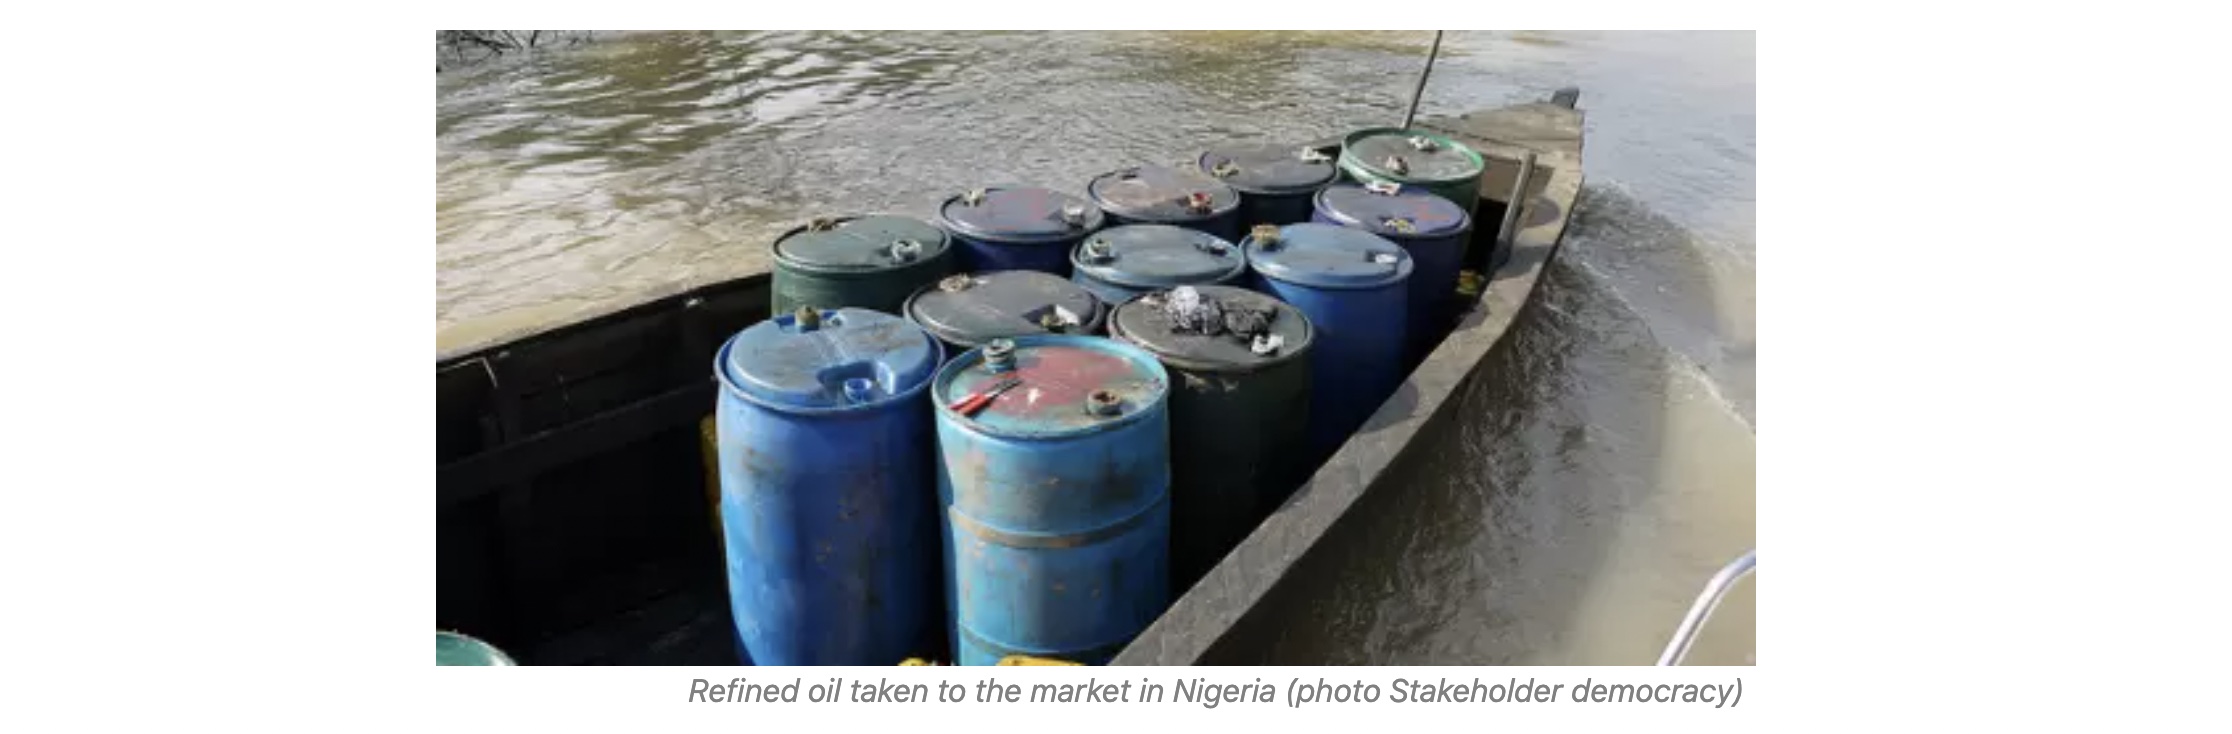 Refined oil taken to market in Nigeria